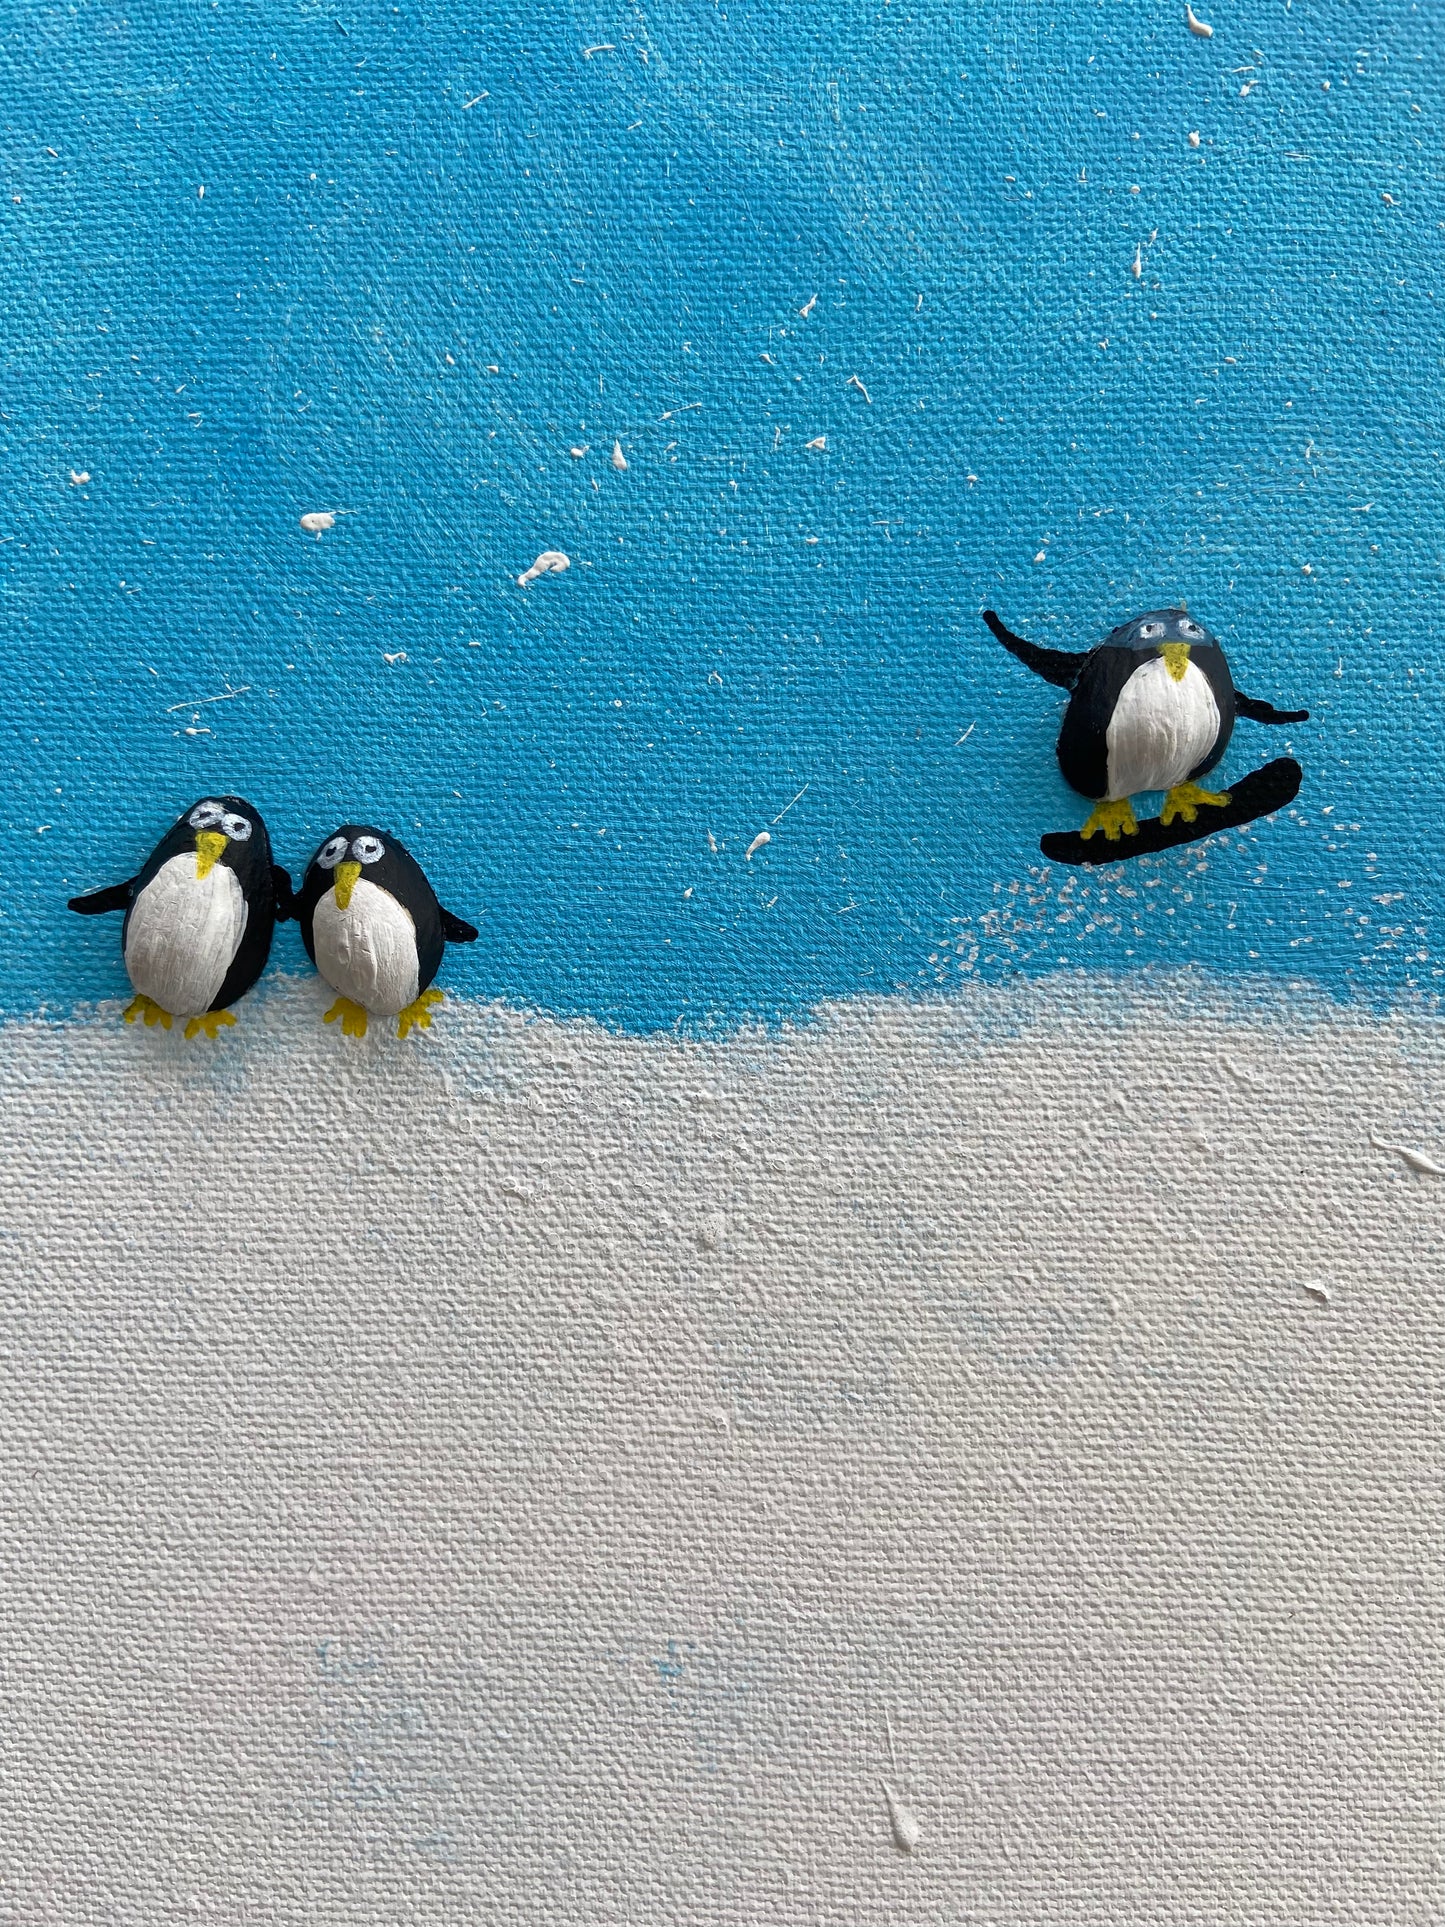 Playful Penguin Parade